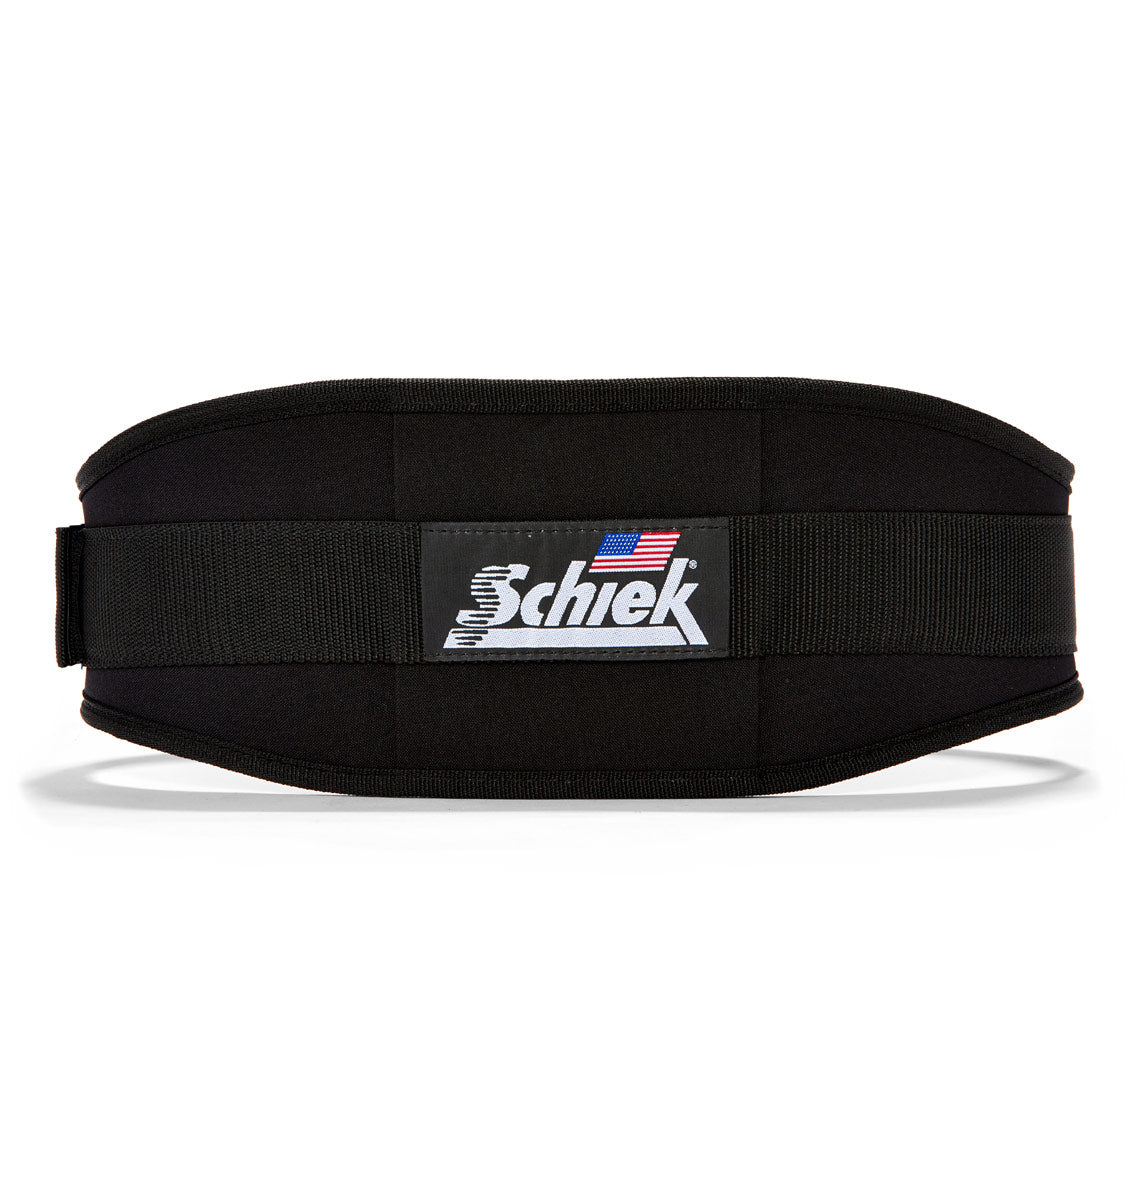 2006 Schiek Contour Weight Lifting Belt Black Back